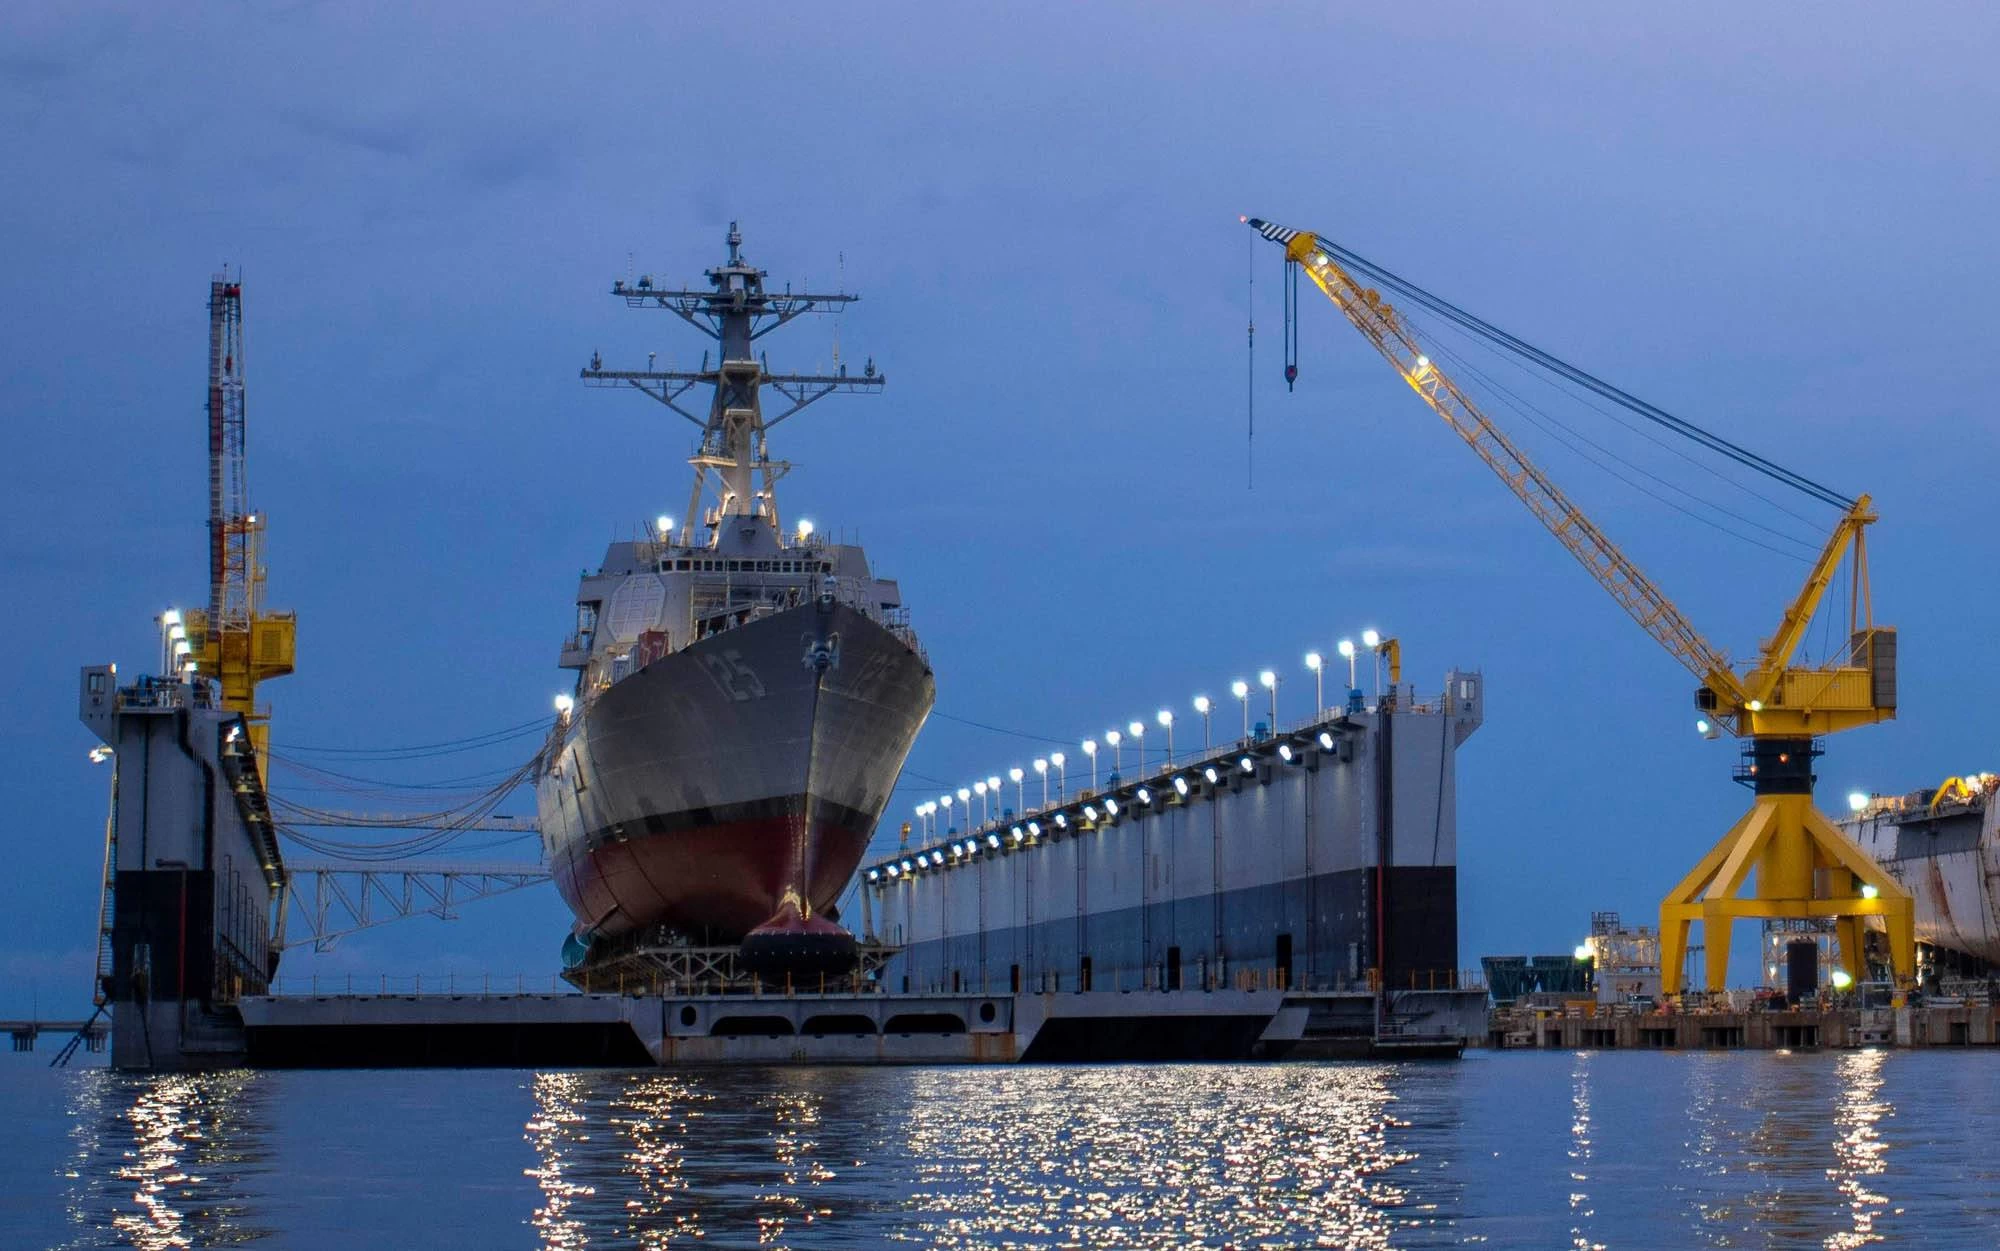 واگذاری تعمیرات ناوگان هفتم نیروی دریایی آمریکا به کشتی سازی های ژاپن